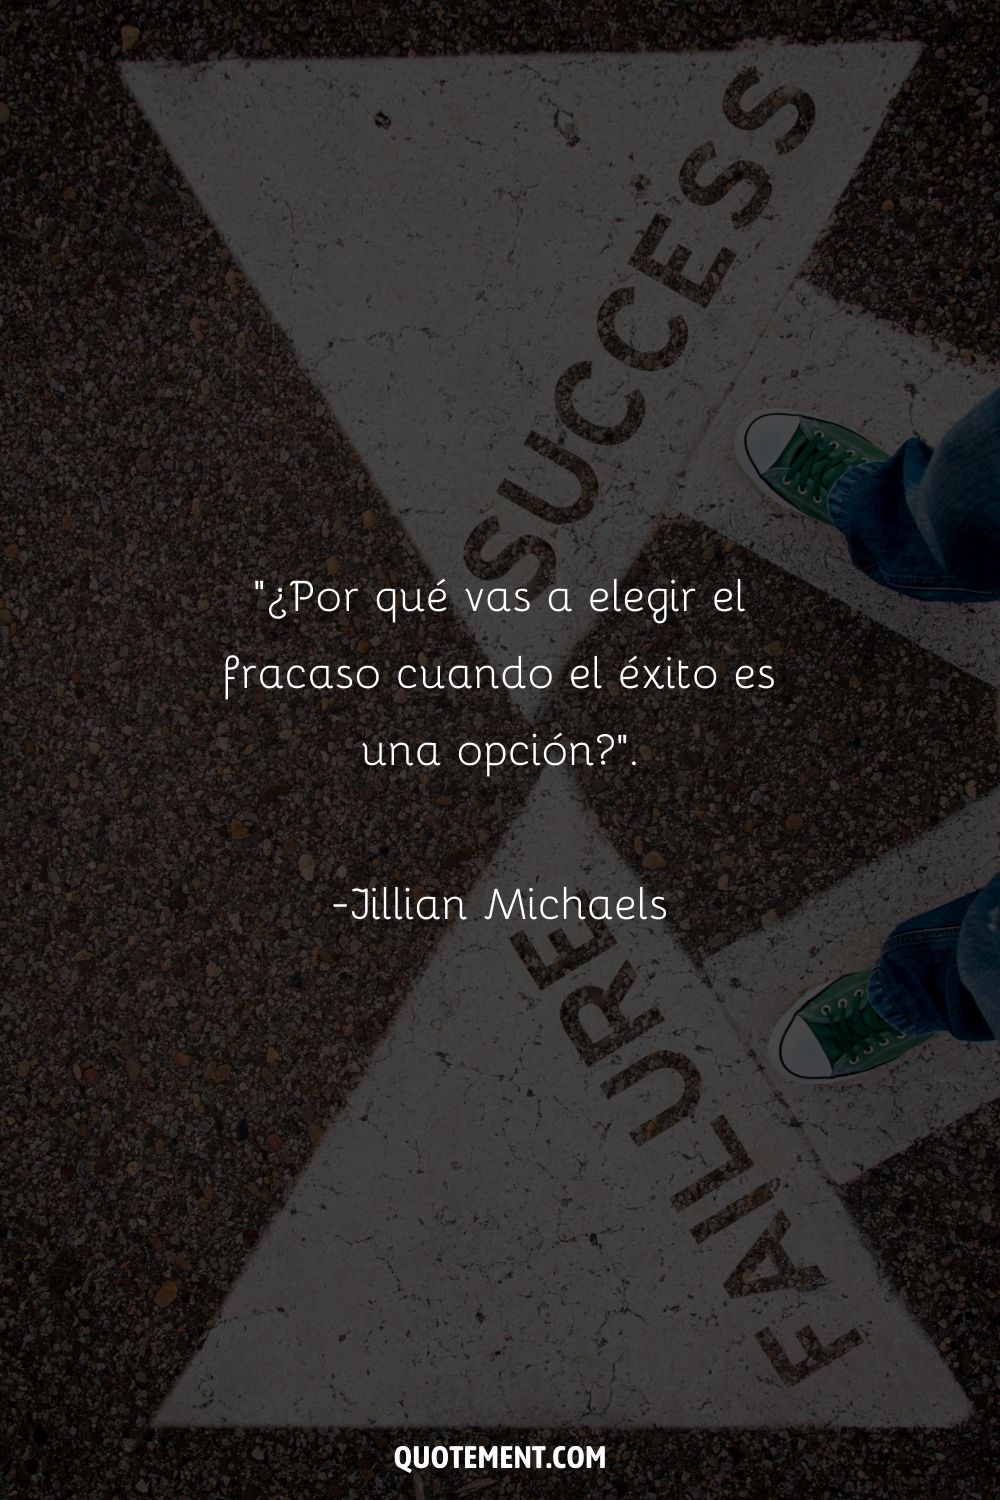 "¿Por qué vas a elegir el fracaso cuando el éxito es una opción?" - Jillian Michaels